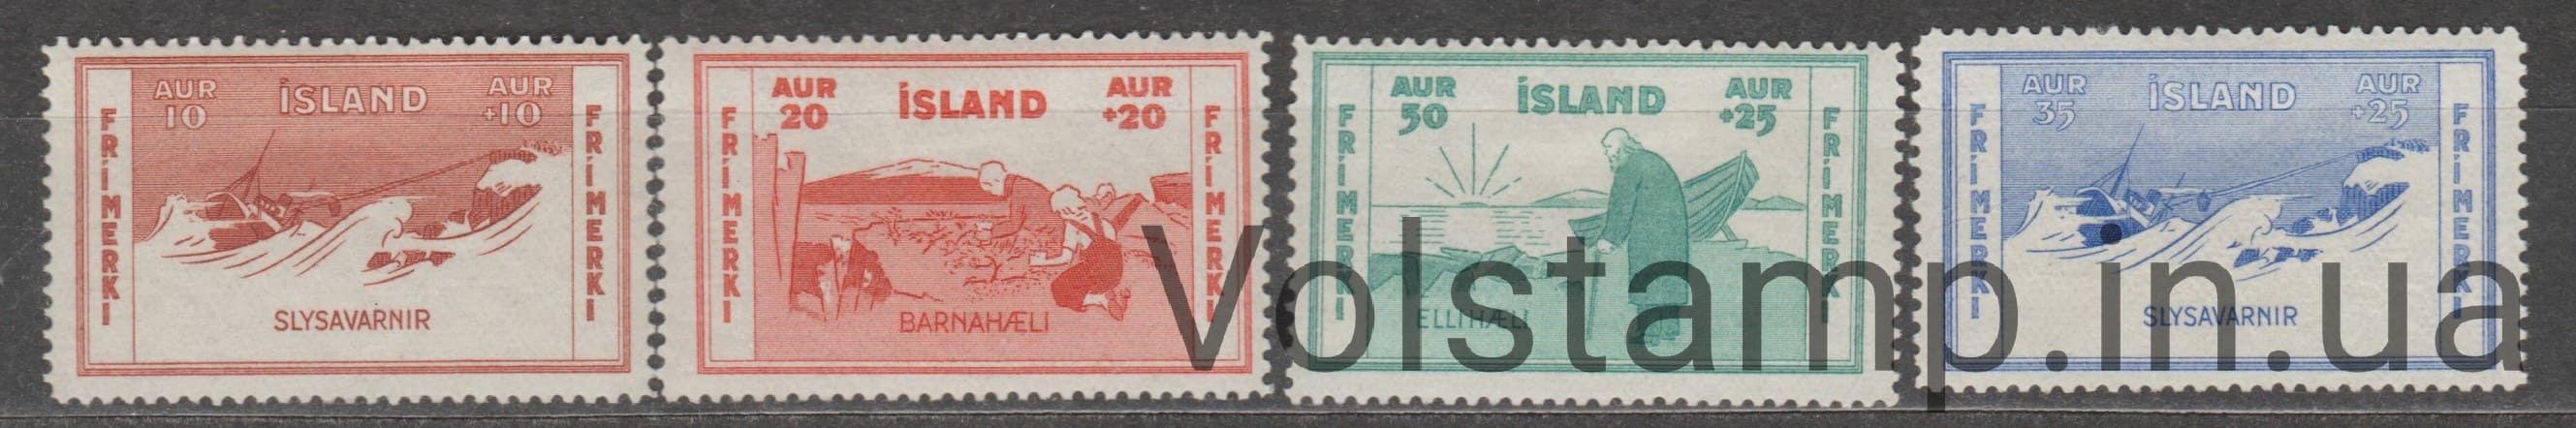 1933 Исландия Серия марок (Благотворительная марка, дети, корабли) MH №168-171